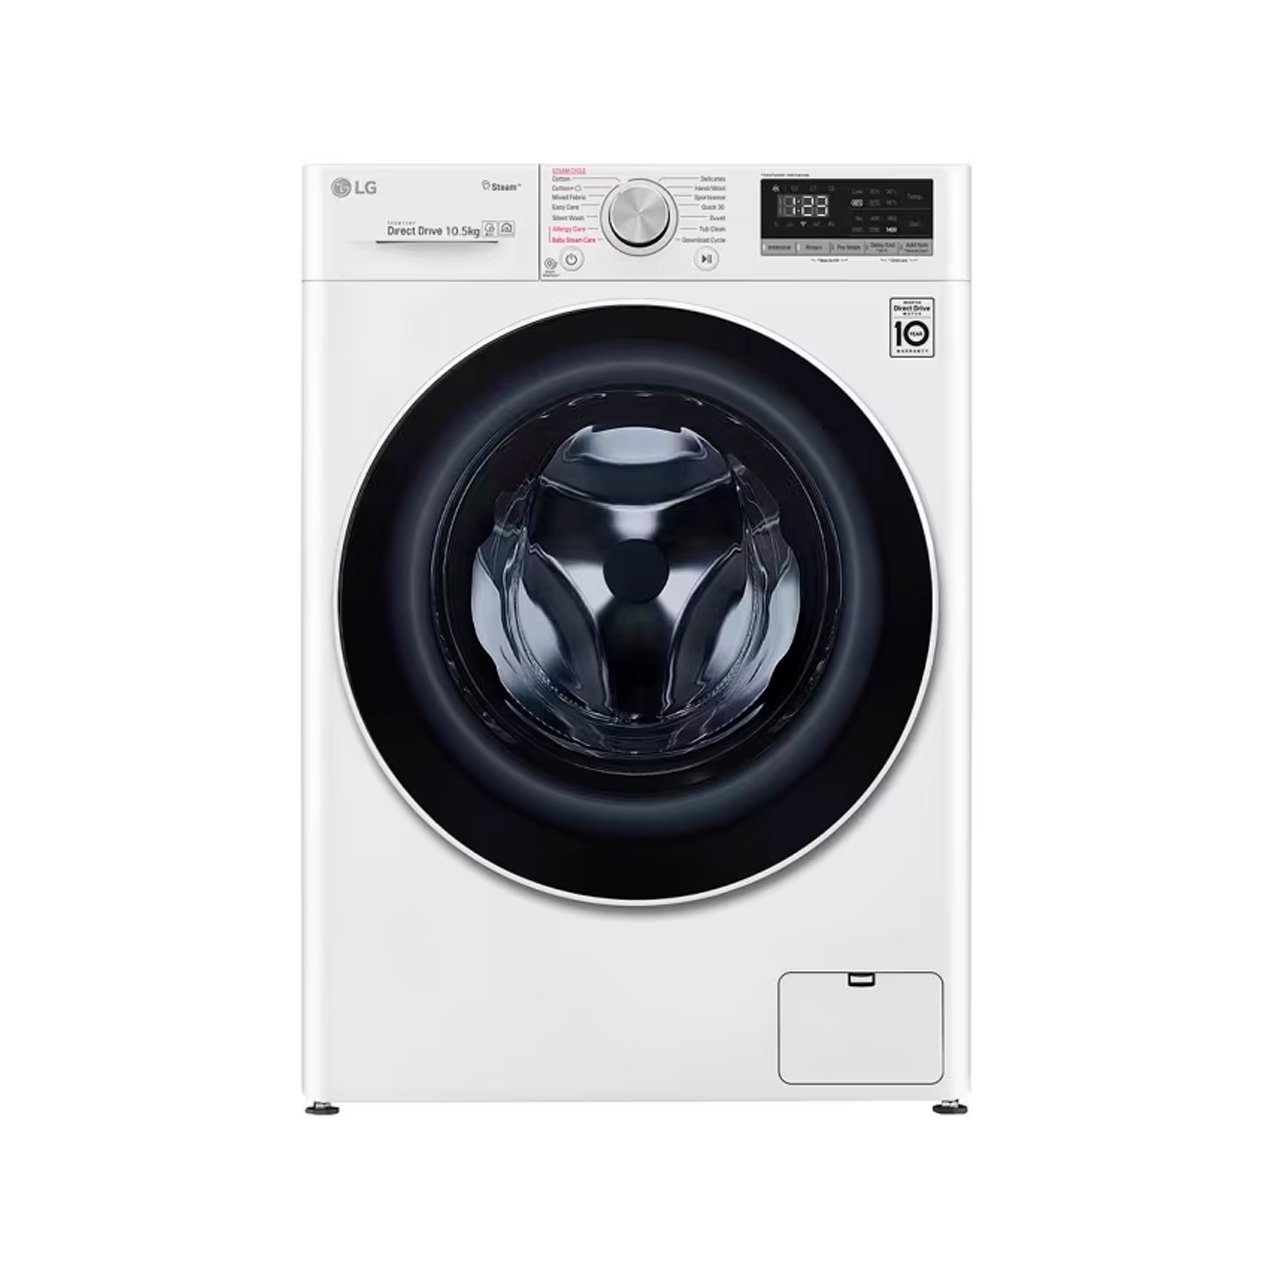 LG 10.5kg Washing Machine